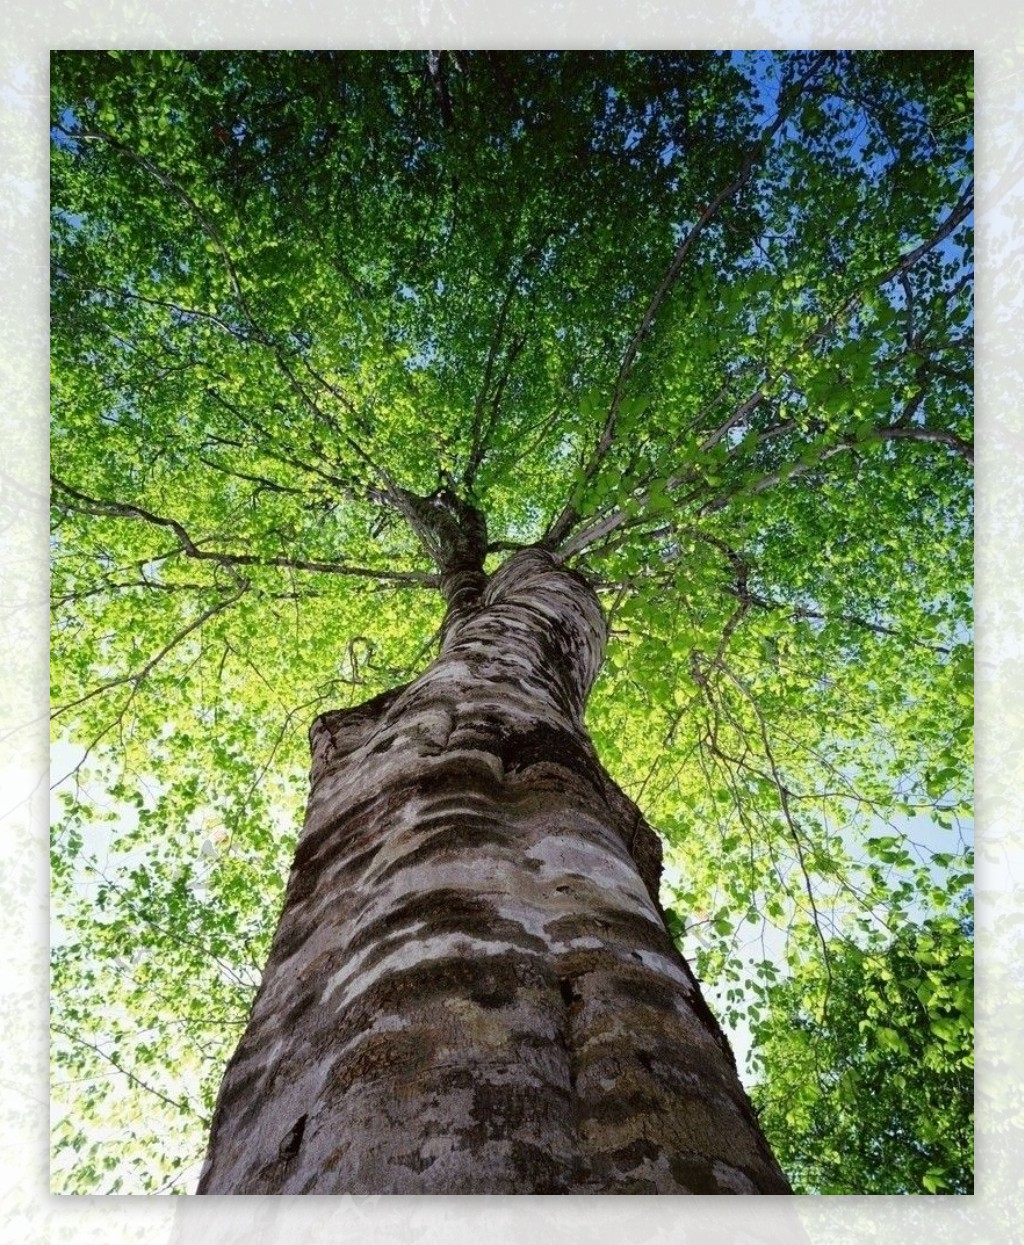 收集一些美腻的关于树这个意象的图片或照片? - 知乎